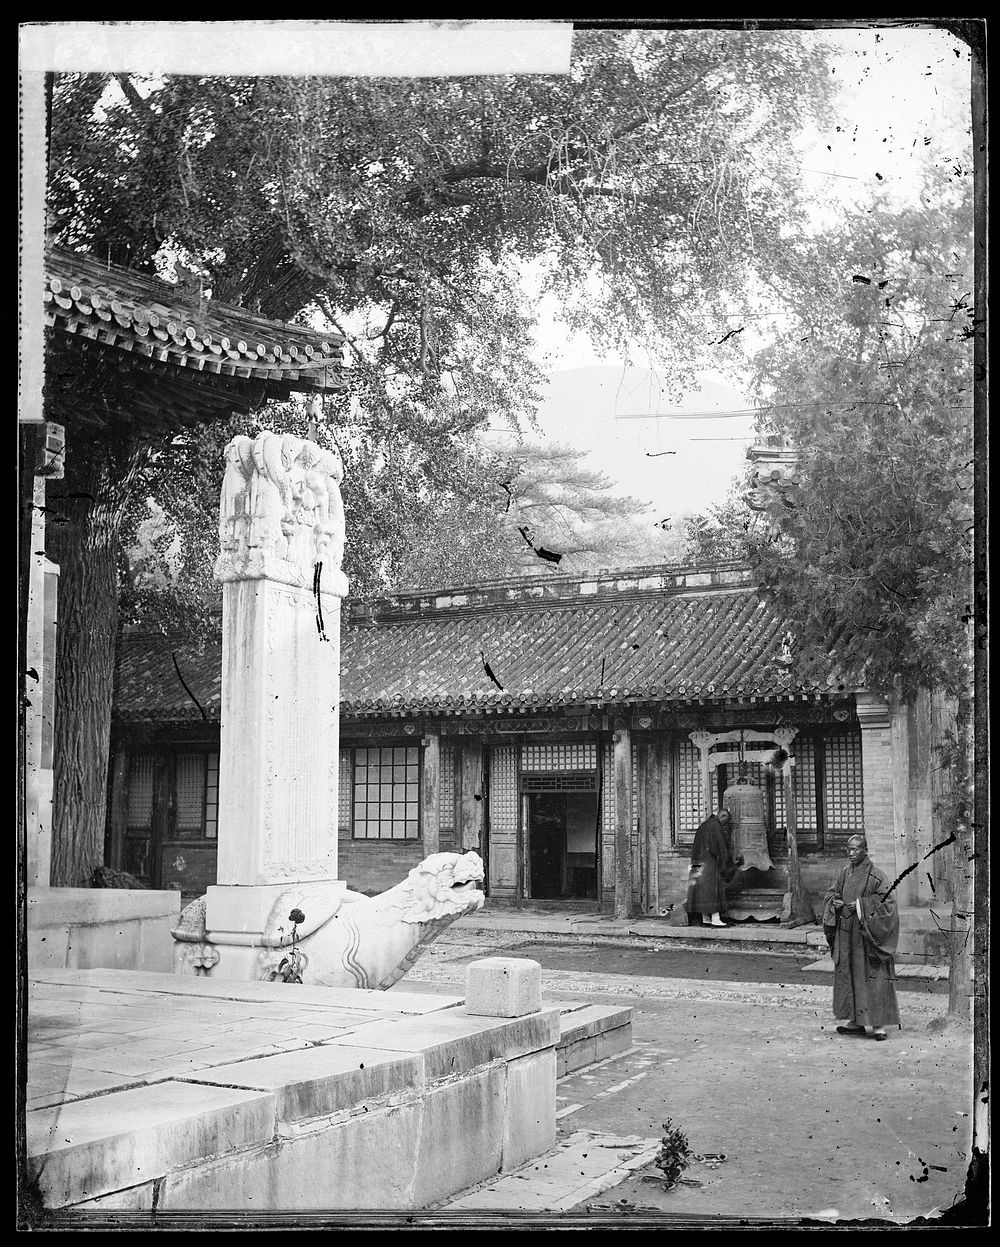 Yuen Ming Yuen, Pechili province, China. Photograph by John Thomson, 1871.